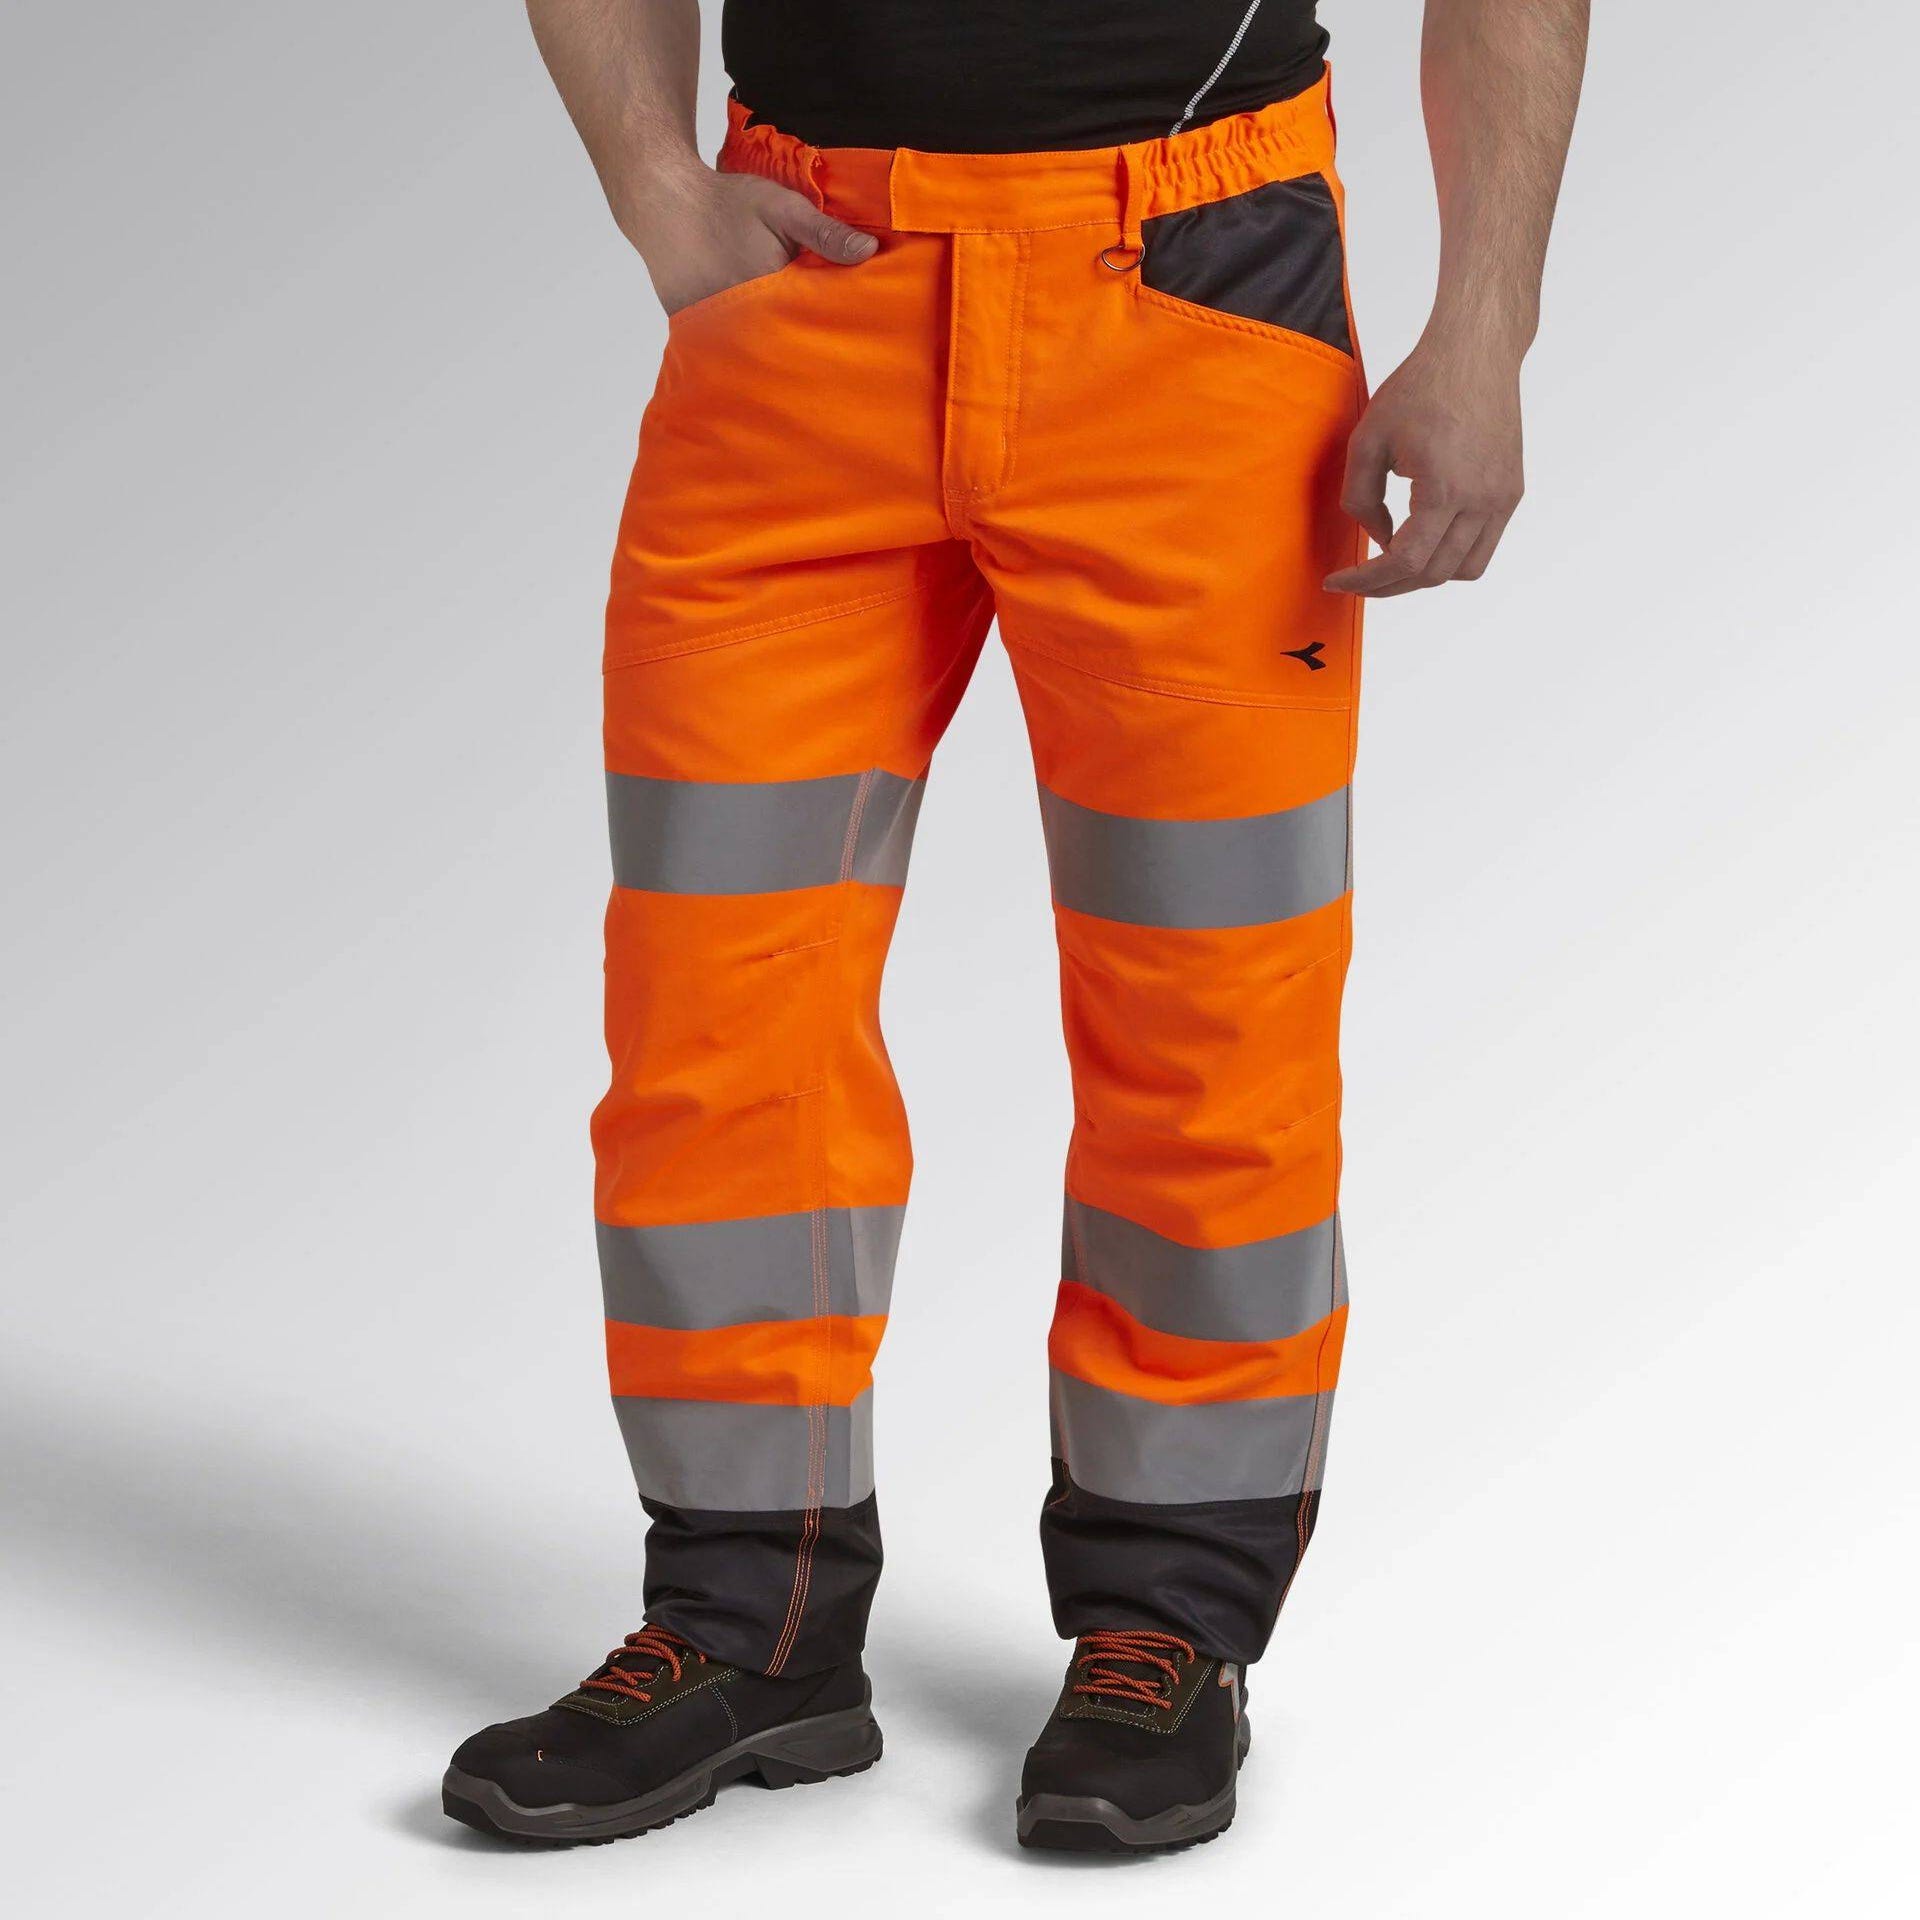 Pantalon de travail haute visibilité Diadora EN 20471:2013 2 Orange Fluo M 6